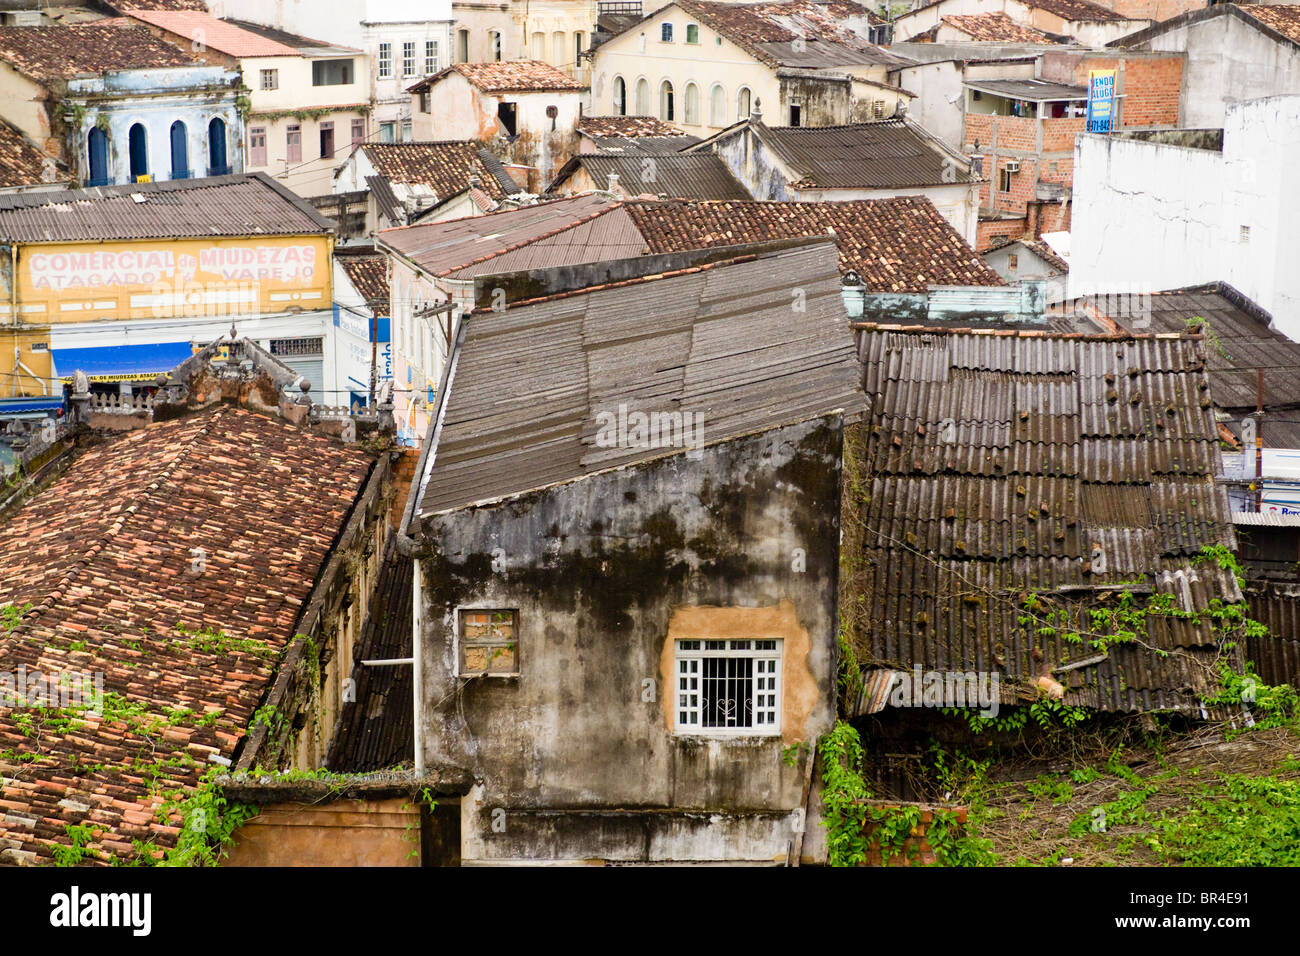 View of a favela near Largo do Pelourinho, Salvador, Brazil. Stock Photo